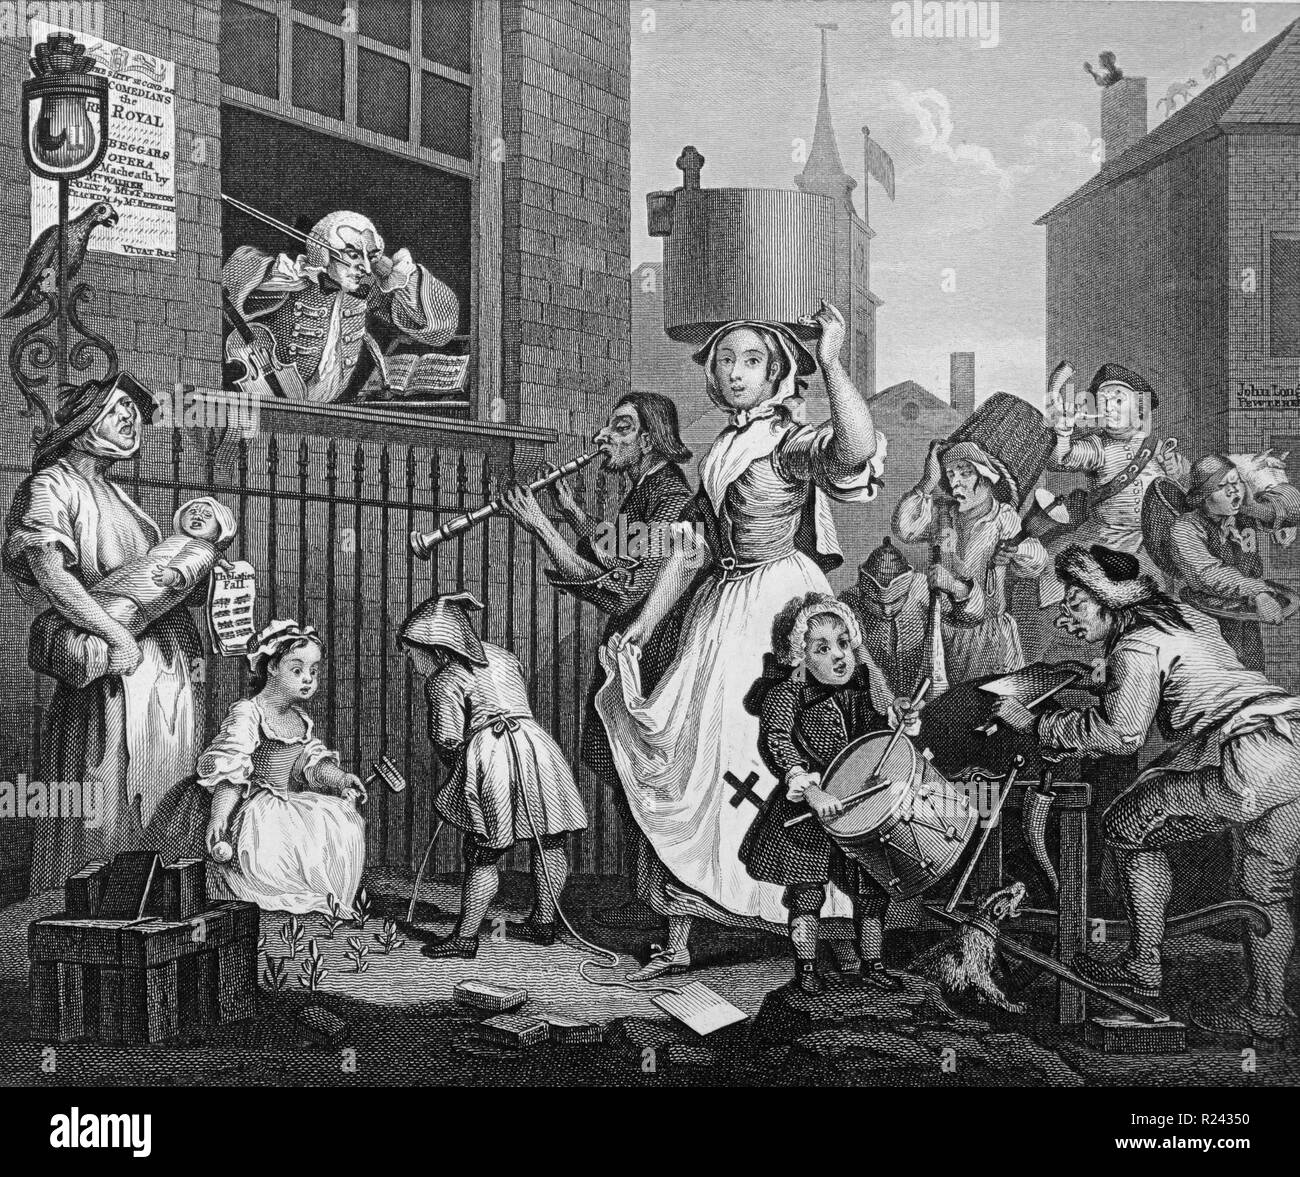 Gravure de l'artiste britannique & graveur, William Hogarth 1697-1764 : Le musicien enragé 1741 18e siècle Banque D'Images